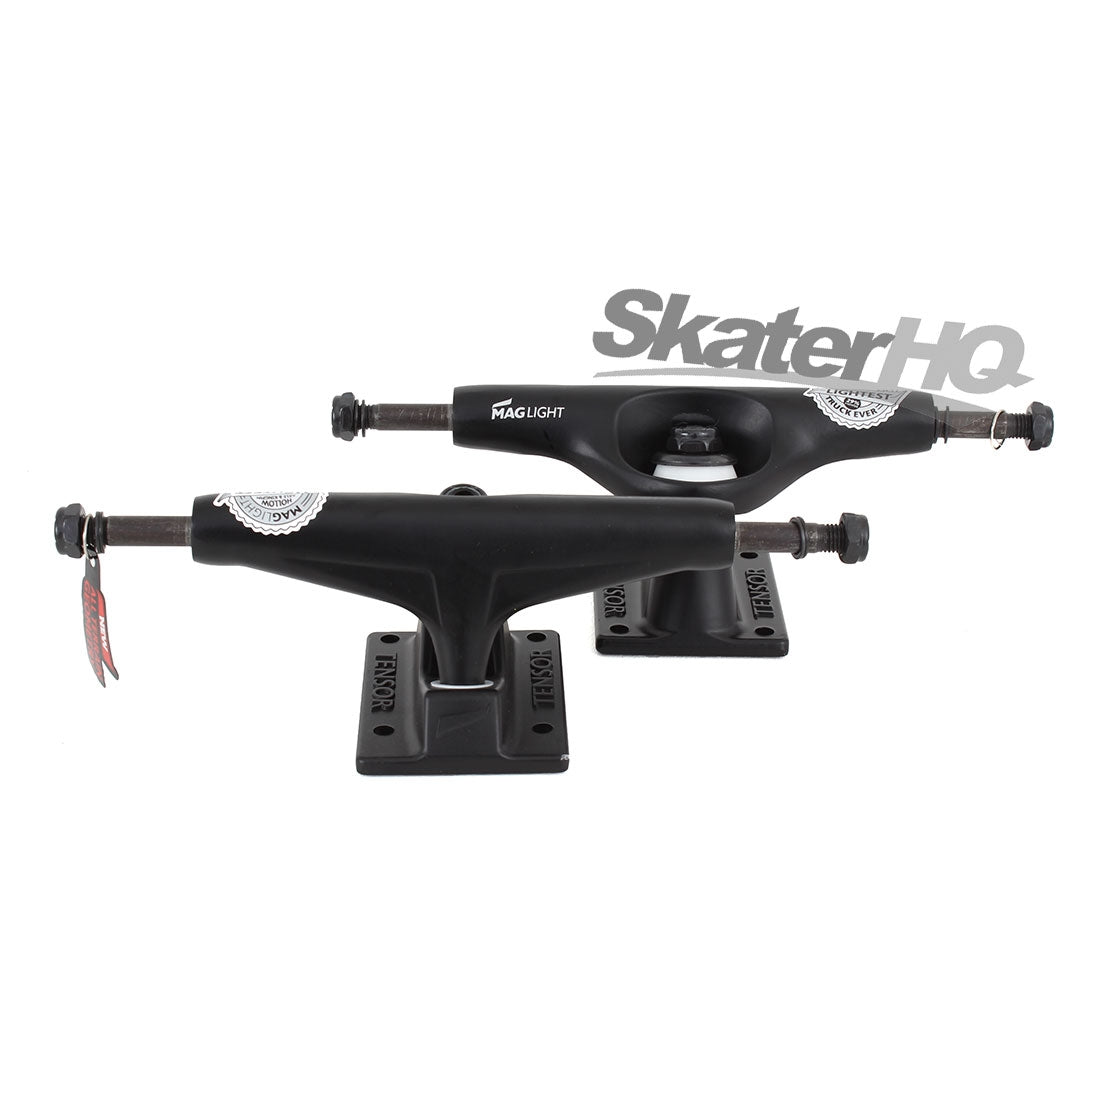 Tensor Mag Light 5.25 - Black Skateboard Trucks